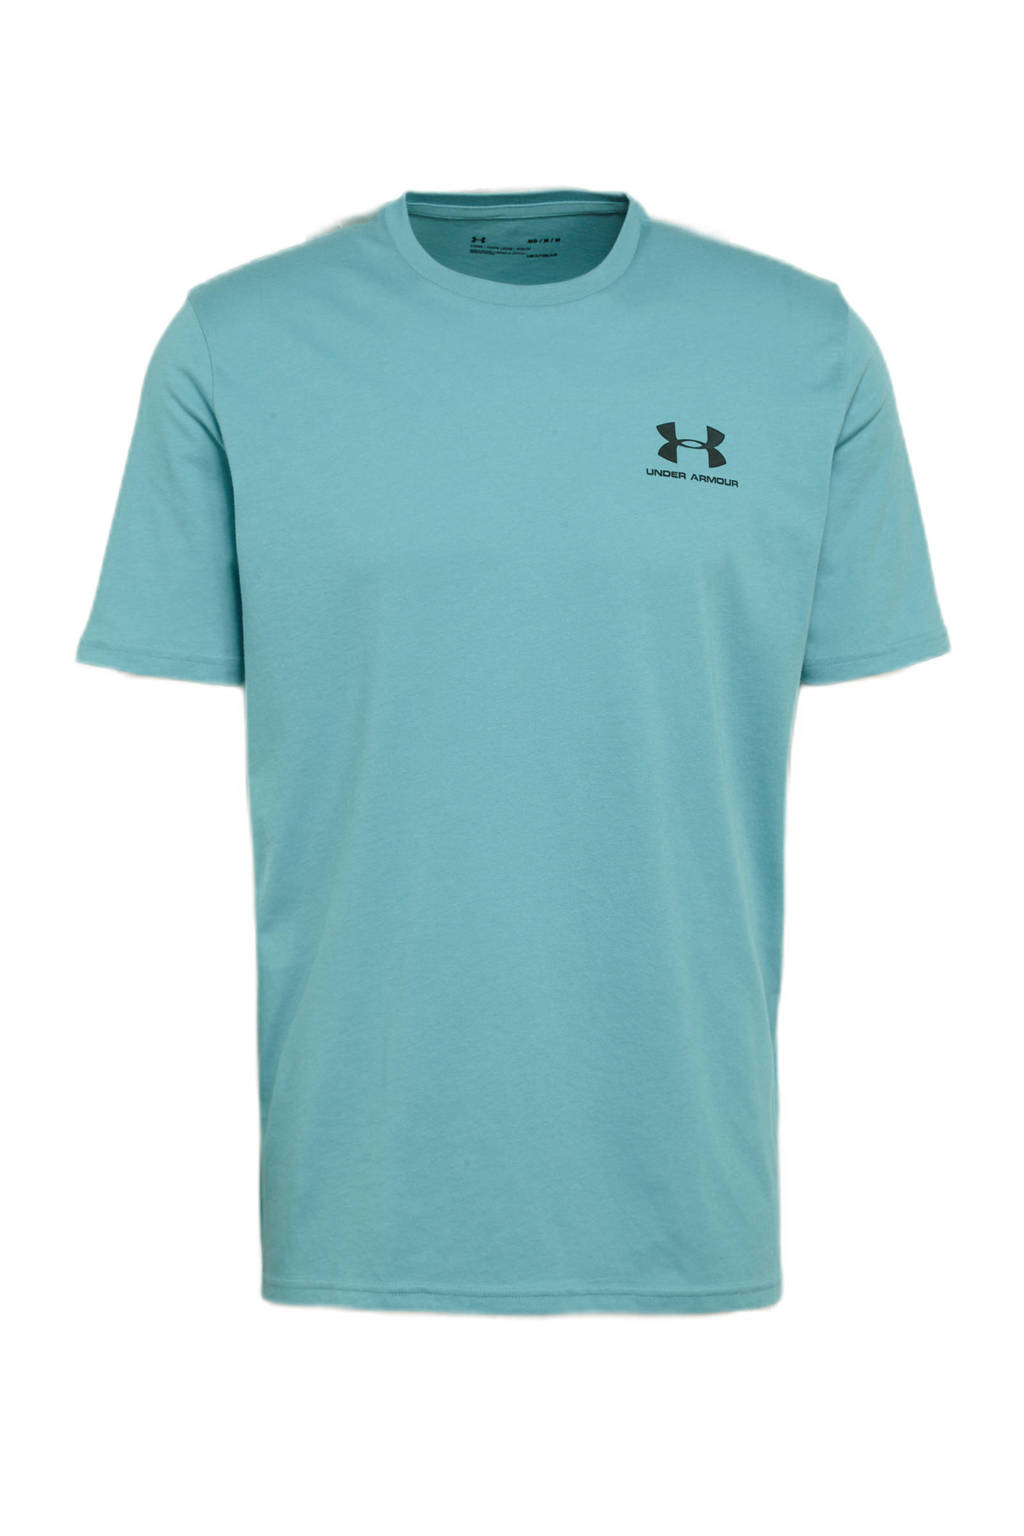 Blauwe heren Under Armour sport T-shirt van katoen met logo dessin, korte mouwen en ronde hals